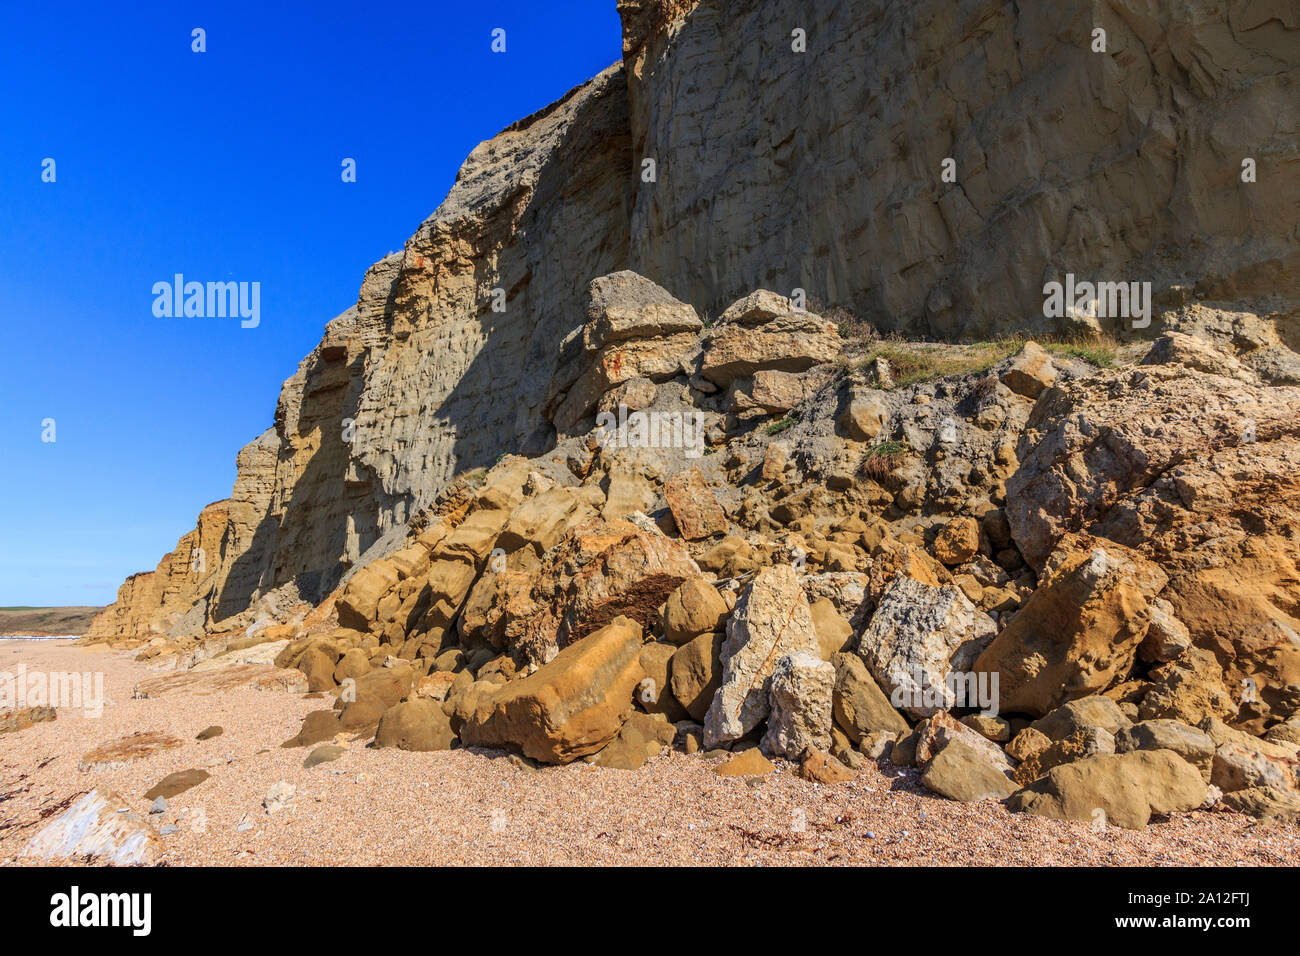 Spiaggia di alveare scogliera di arenaria cade, pericolo,vicino a West Bay resort costa, Jurassic Coast, sbriciolare scogliere di arenaria,sito UNESCO, Dorset, England, Regno Unito, GB Foto Stock